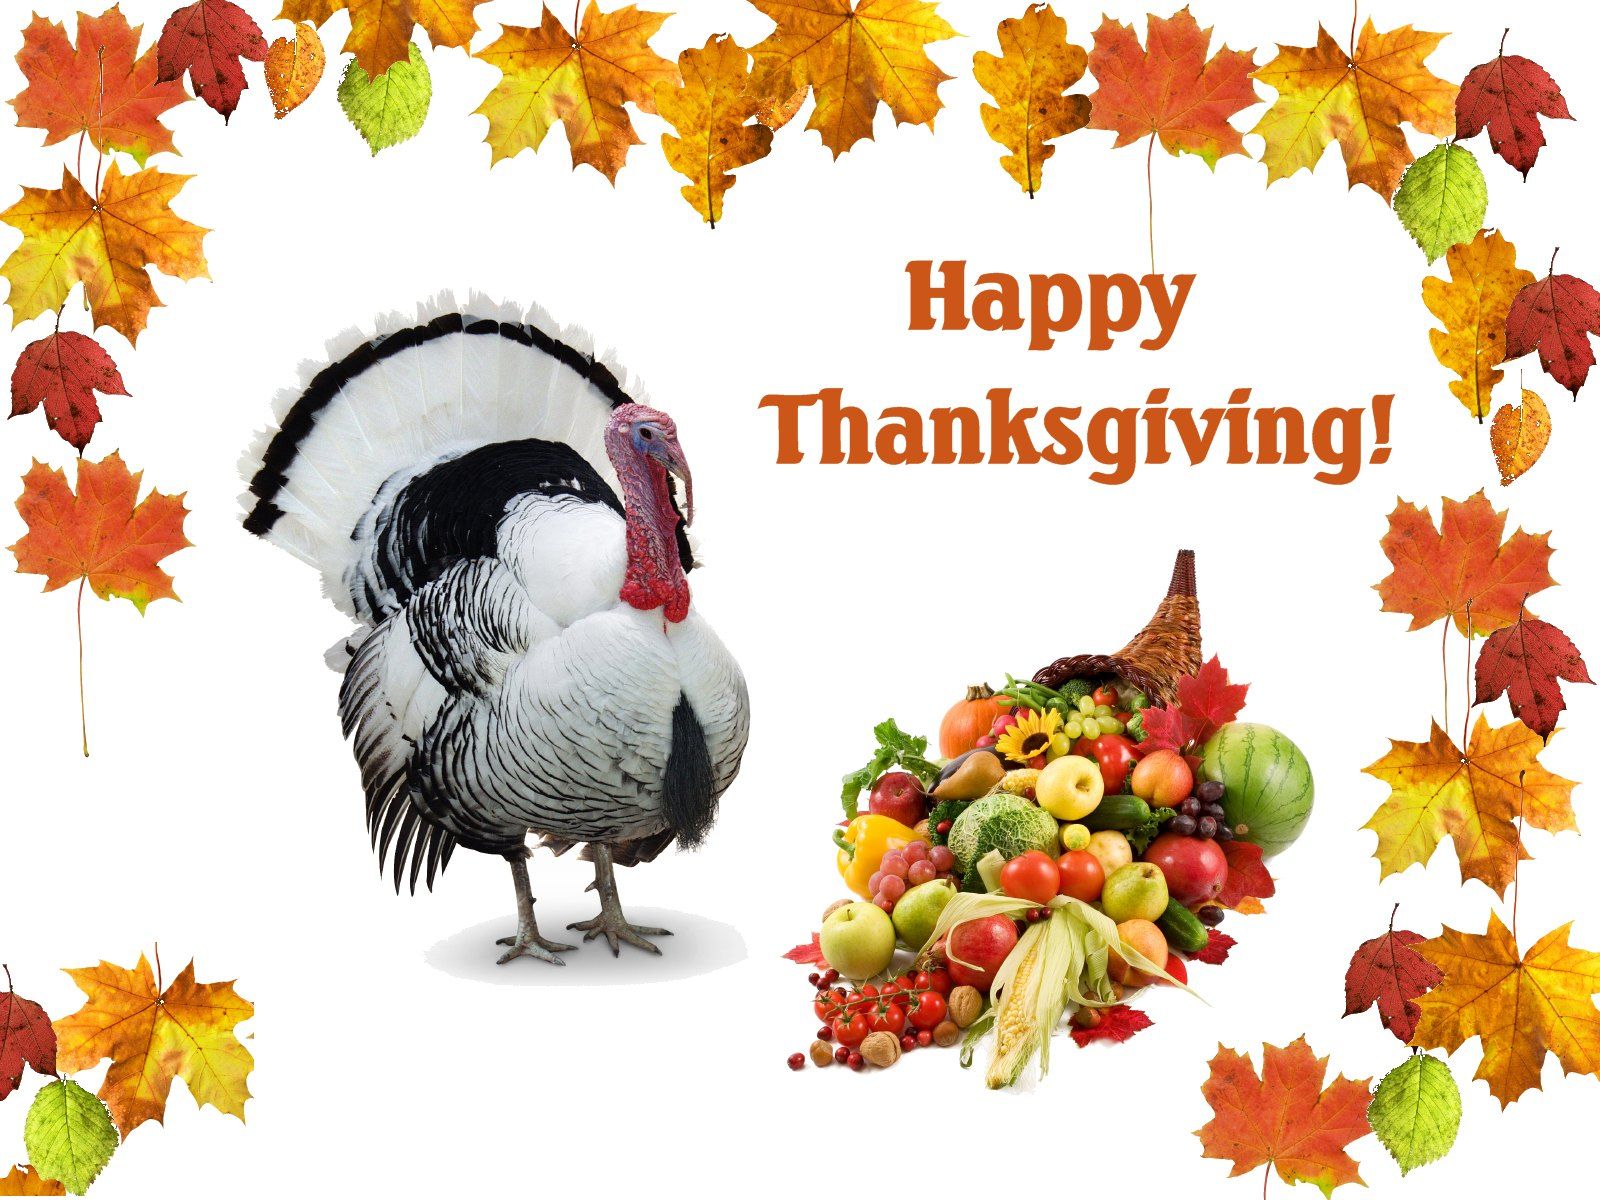 Thanksgiving 2013 , HD Wallpaper & Backgrounds